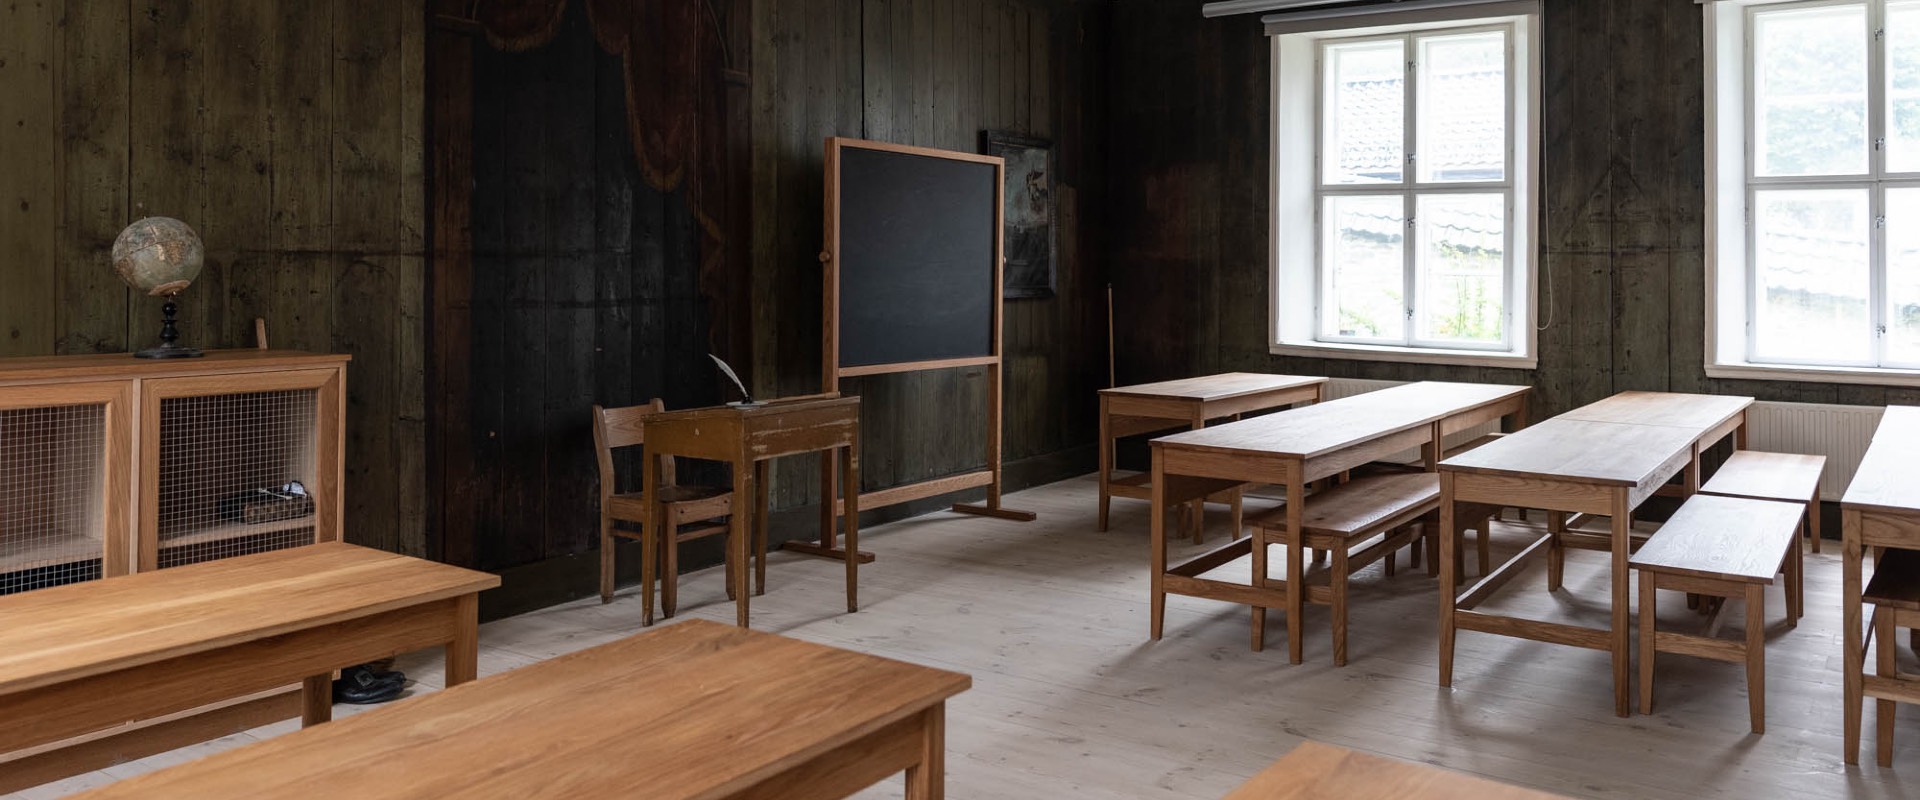 Mesterlektien: skolestuen på Latinskolen i Bergen